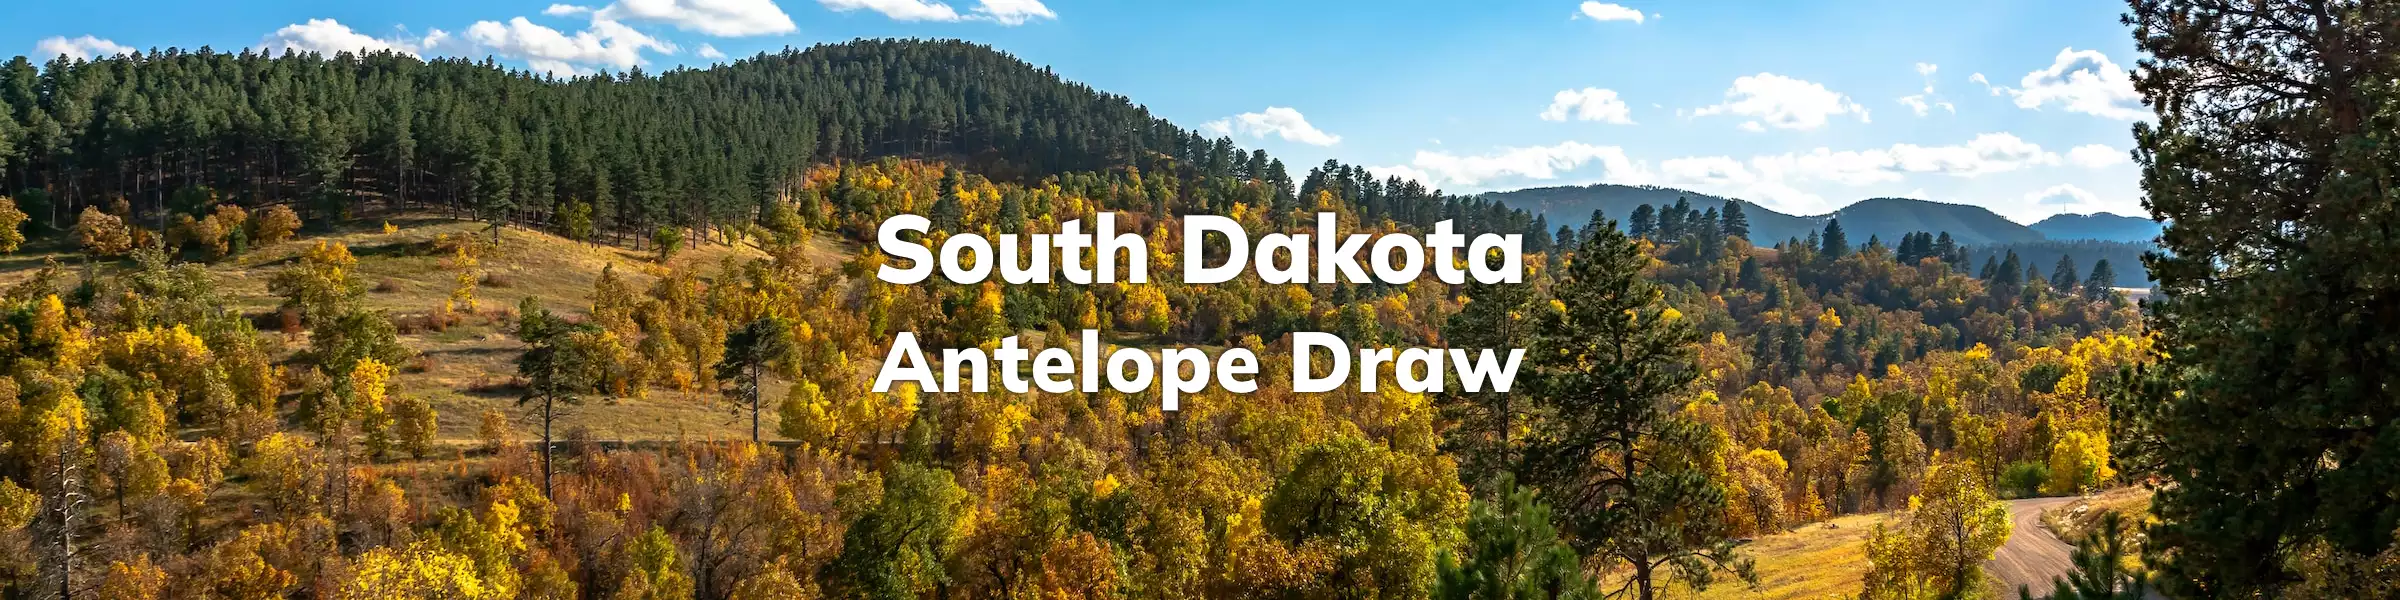 South Dakota Antelope Draw